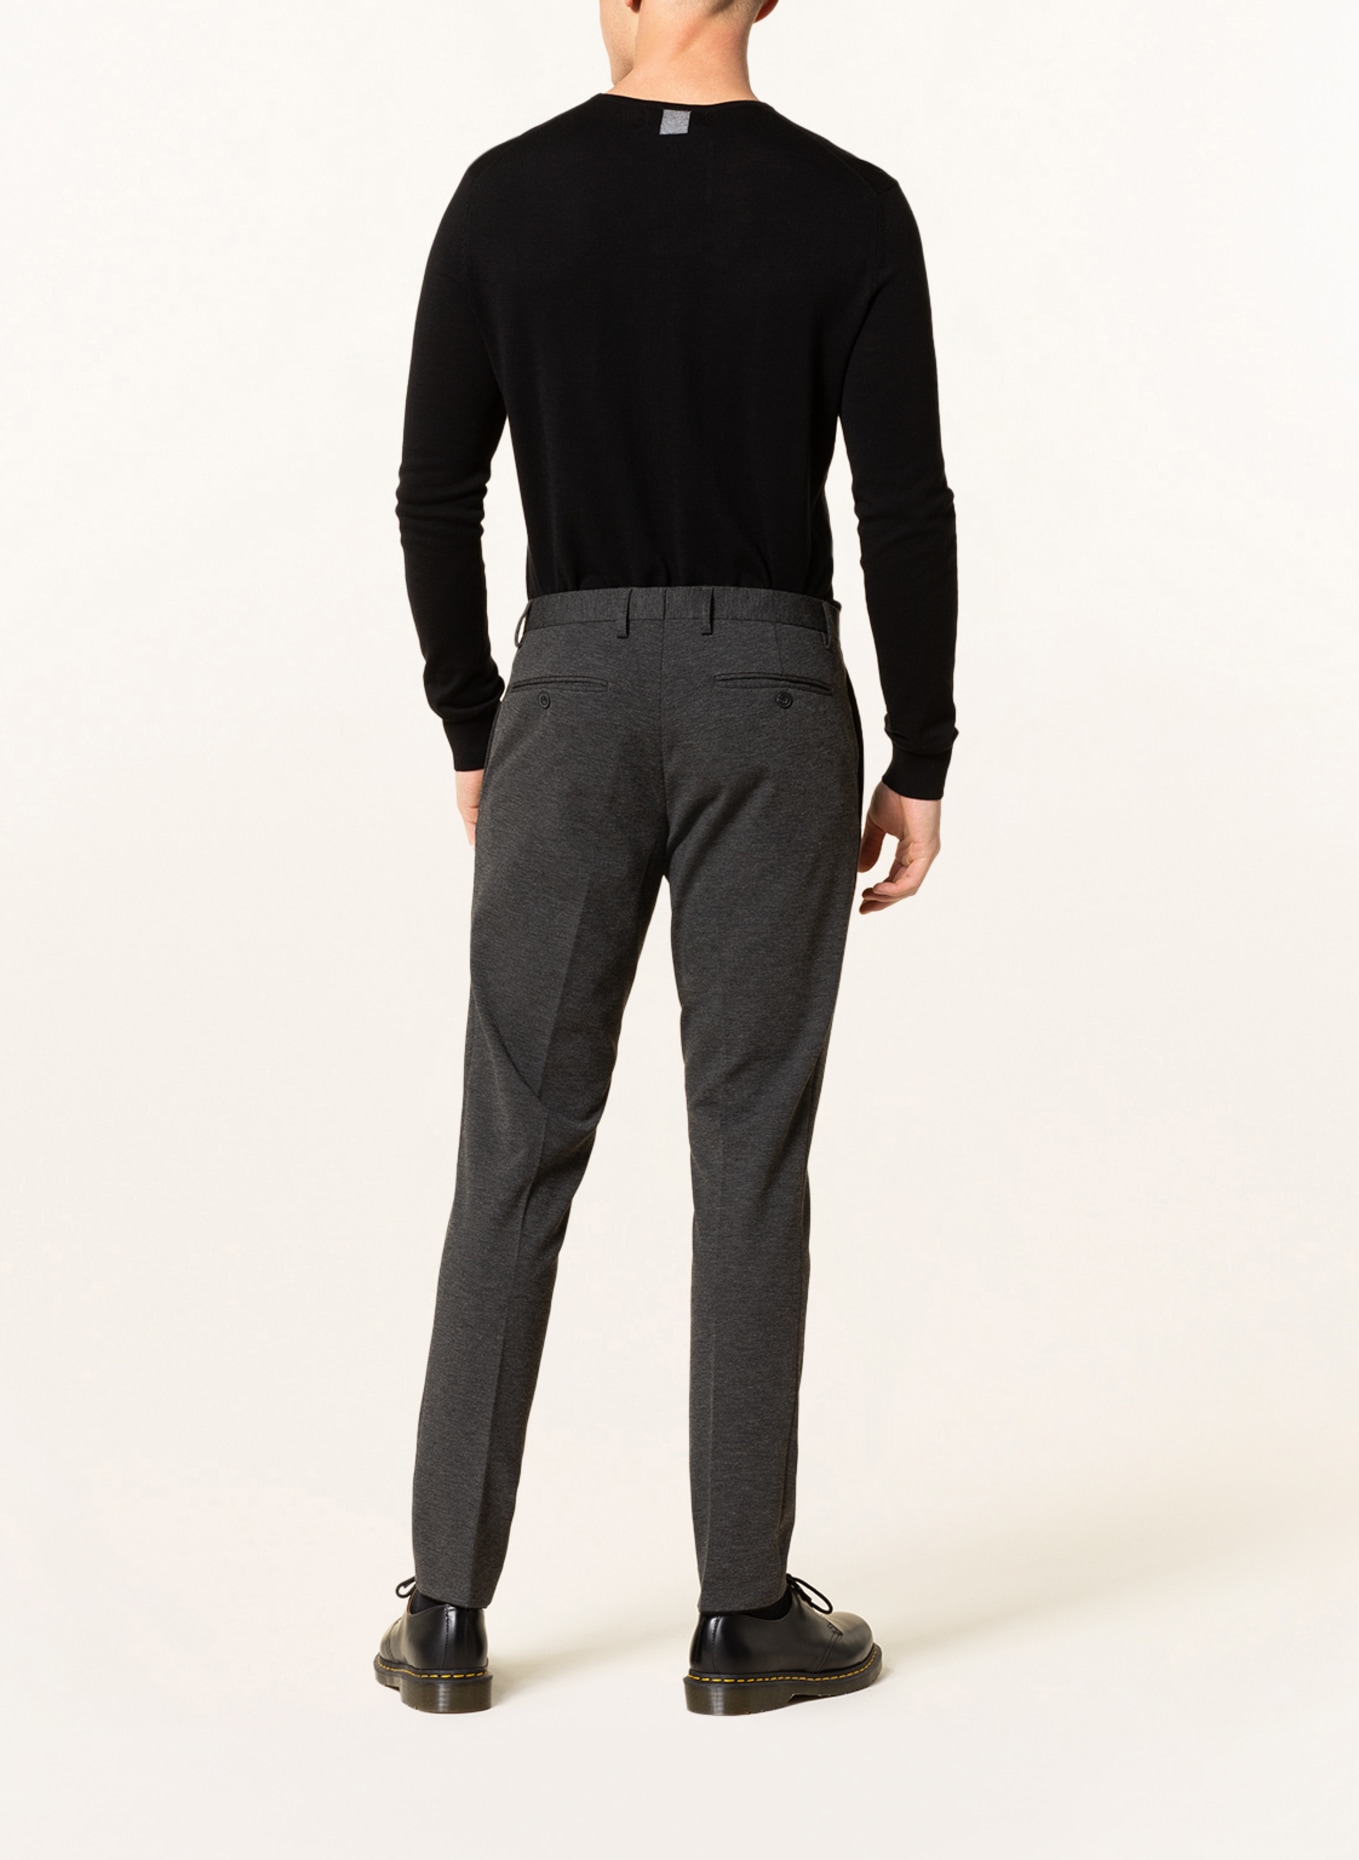 PAUL Suit trousers slim fit, Color: 750 Charcoal (Image 4)